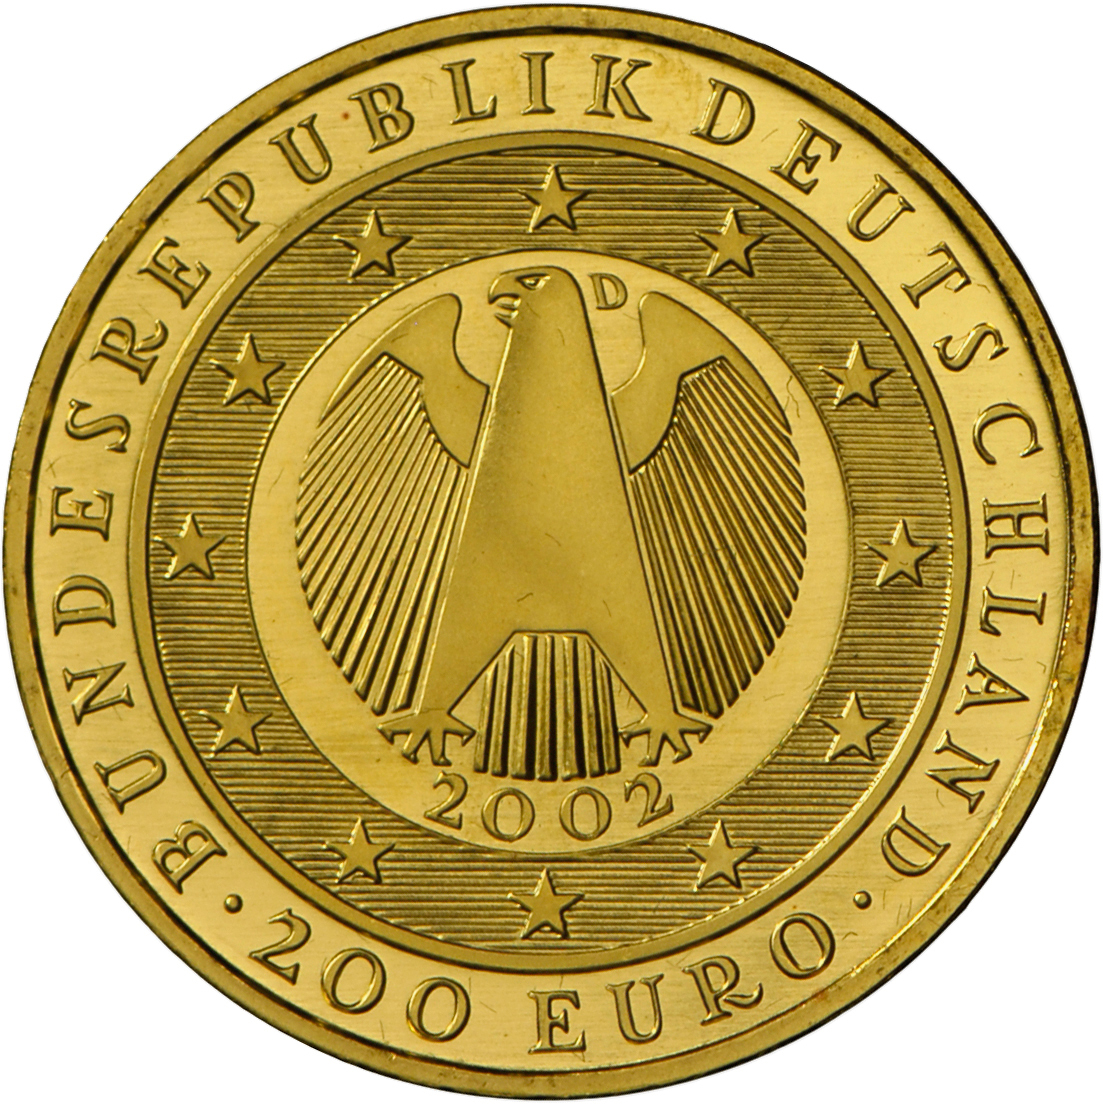 05205 Deutschland - Anlagegold: 200 Euro 2002 D, Währungsunion, In Kapsel, Mit Echtheitszertifikat Und Originaletui. - Allemagne